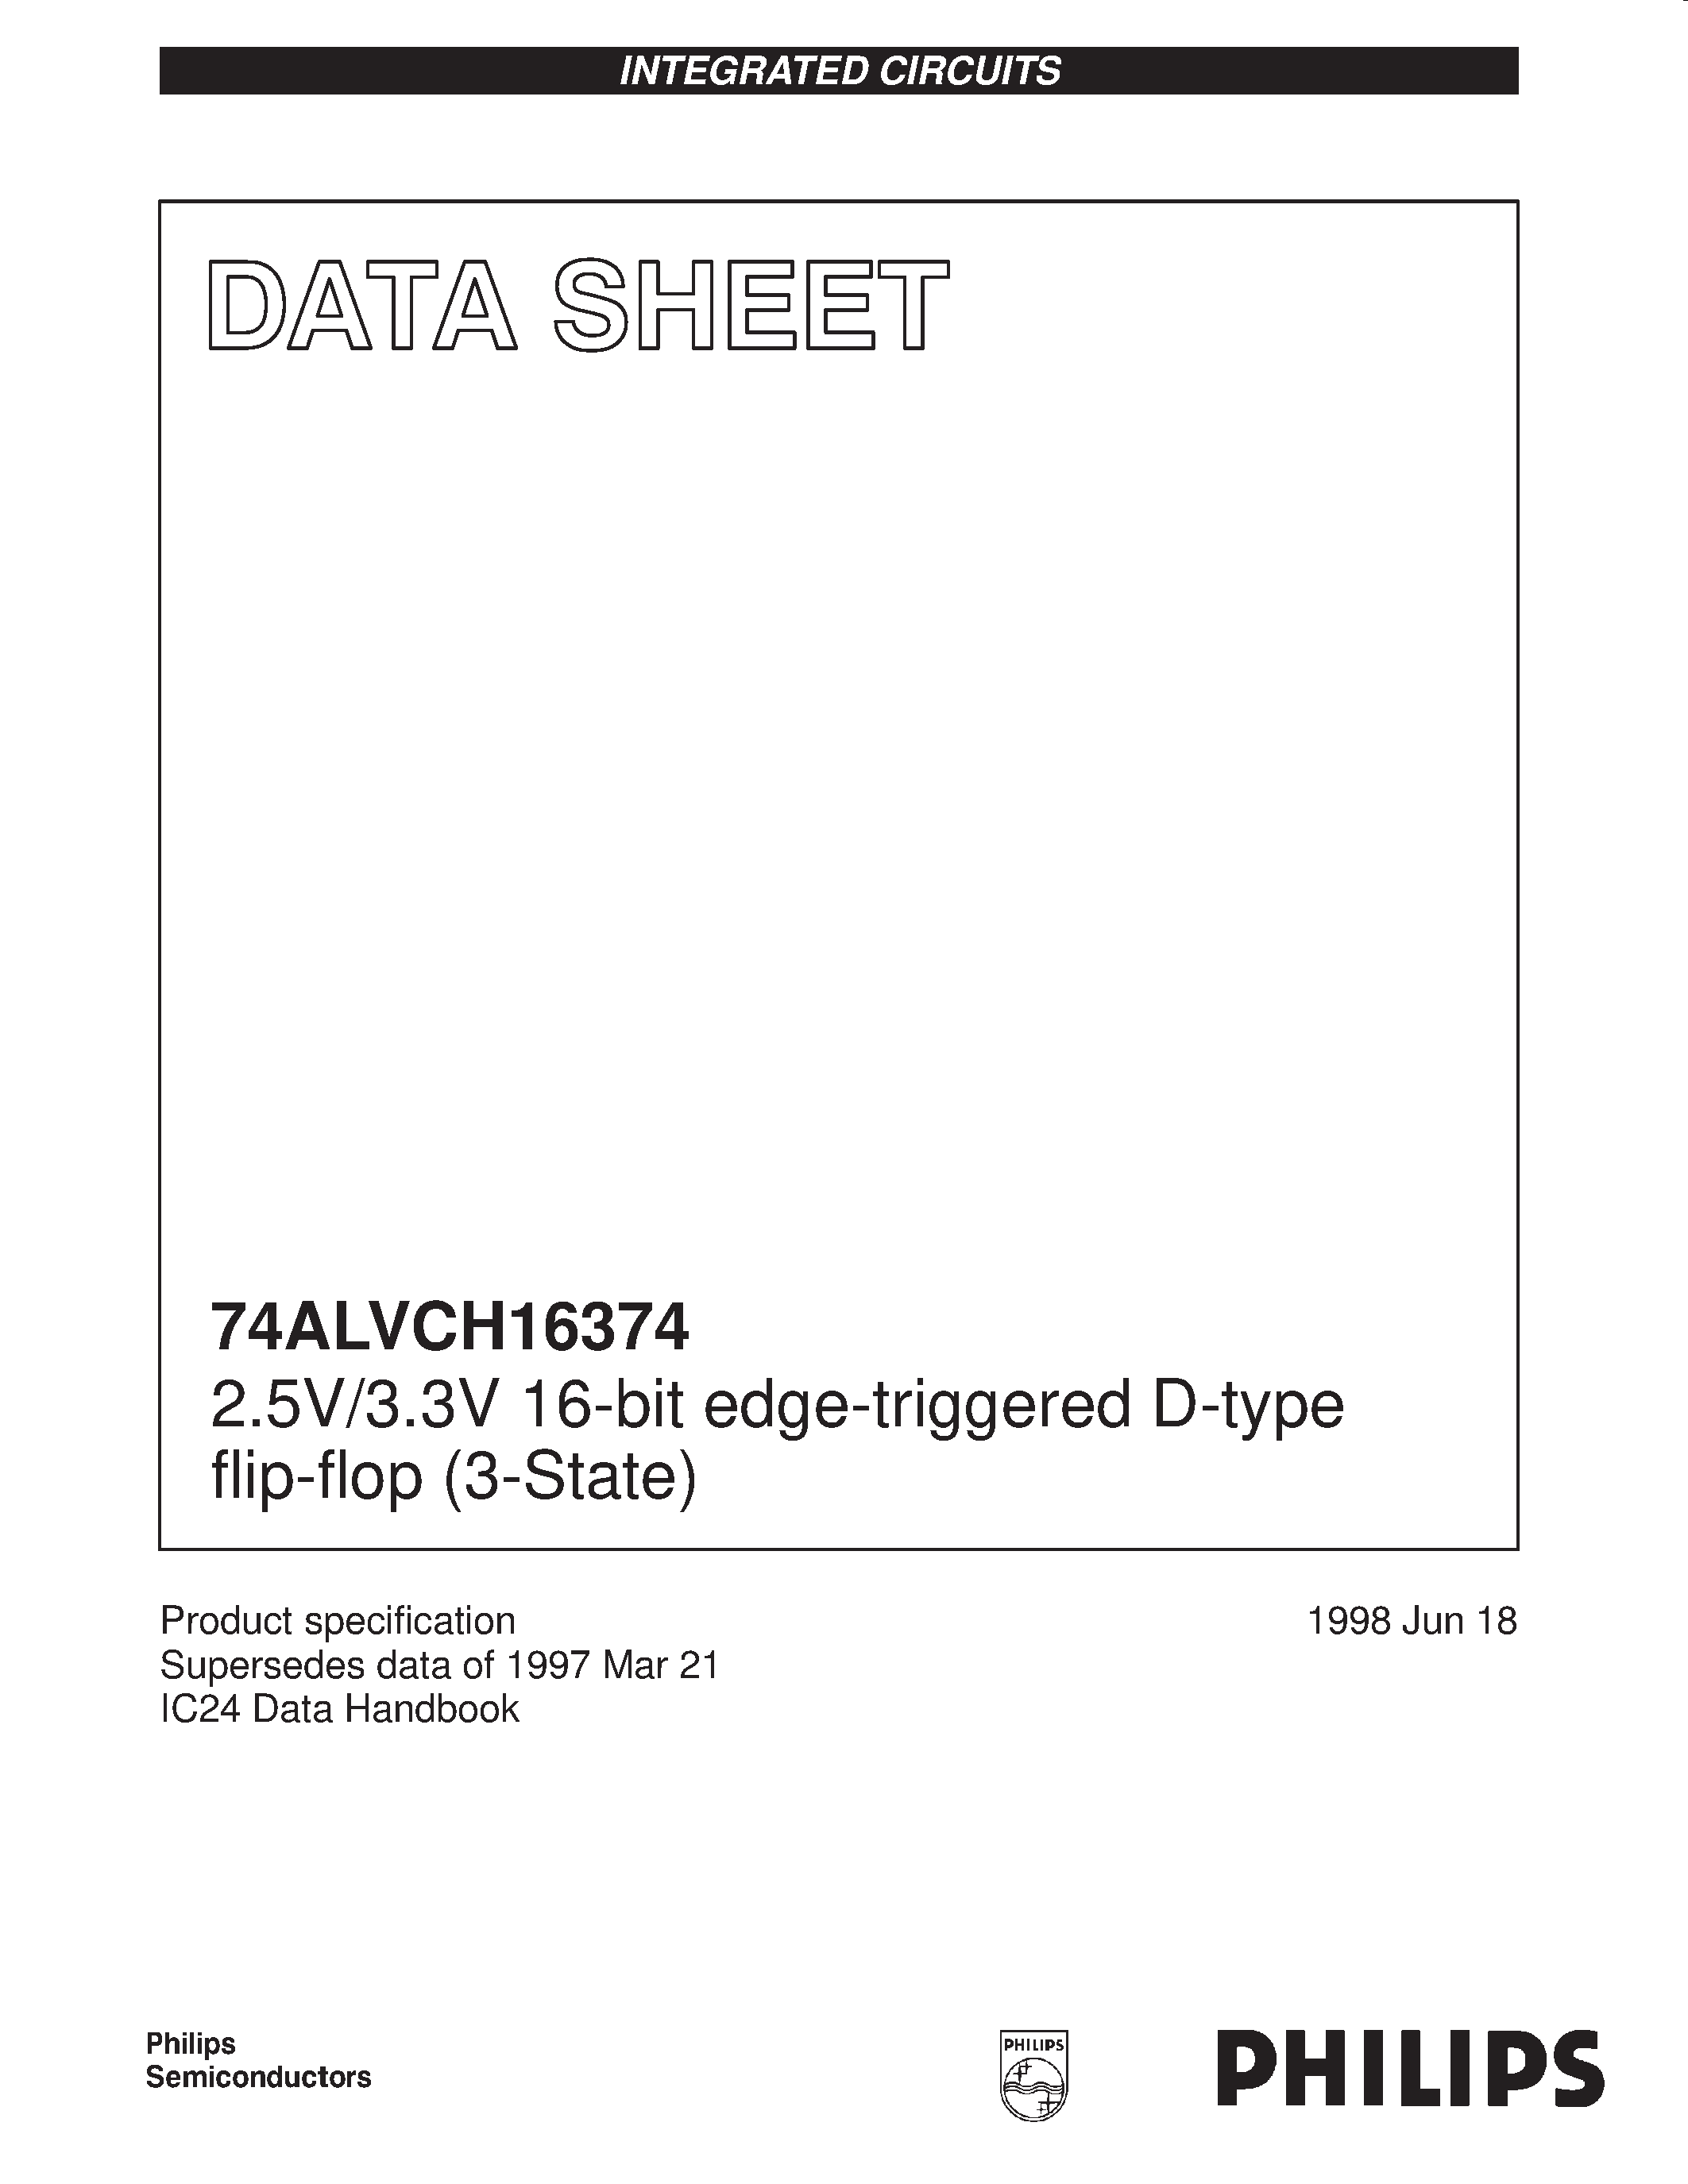 Datasheet 74ALVCH16374DGG - 2.5V/3.3V 16-bit edge-triggered D-type flip-flop 3-State page 1